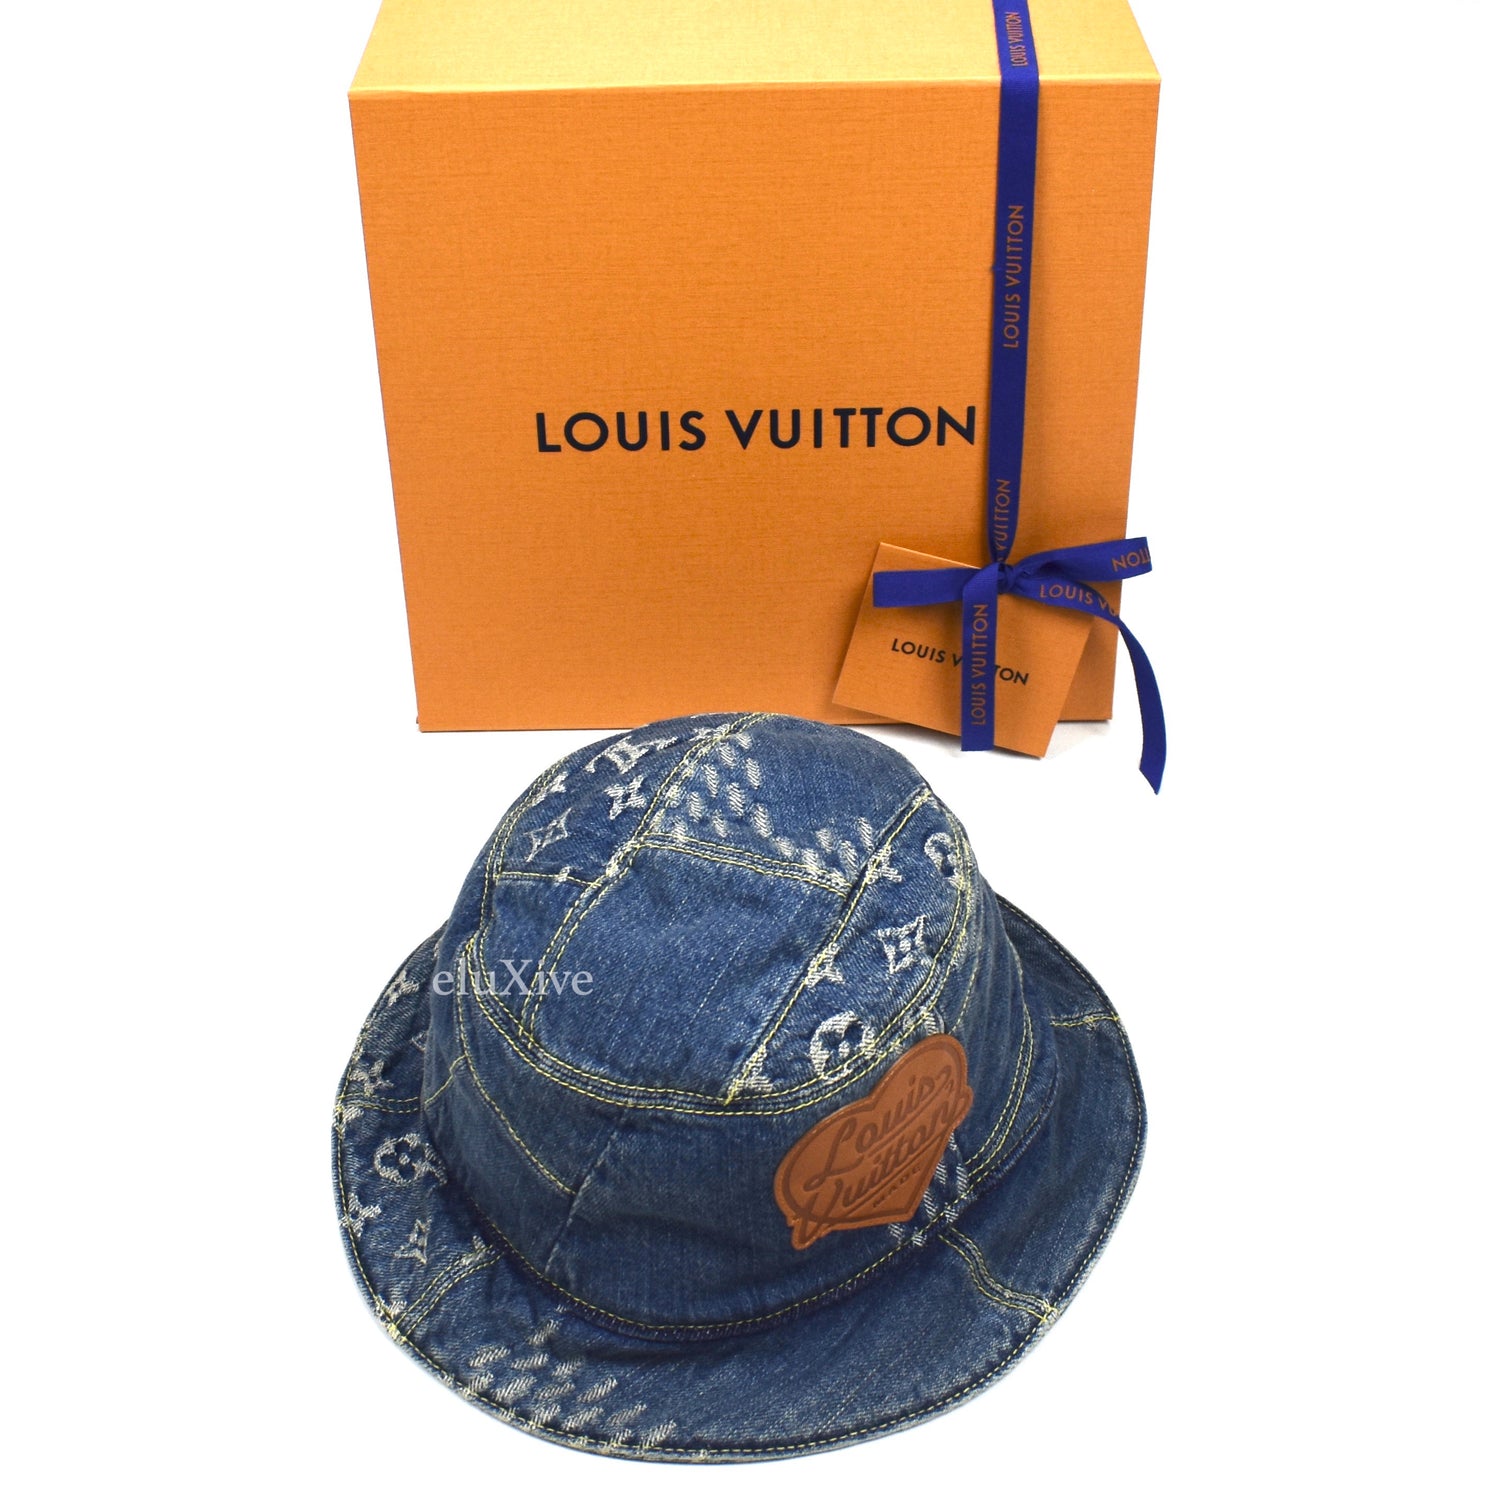 LOUIS VUITTON MP3242 Nigo Bonet Denim LV Made denim Bucket Hat Size L  Indigo